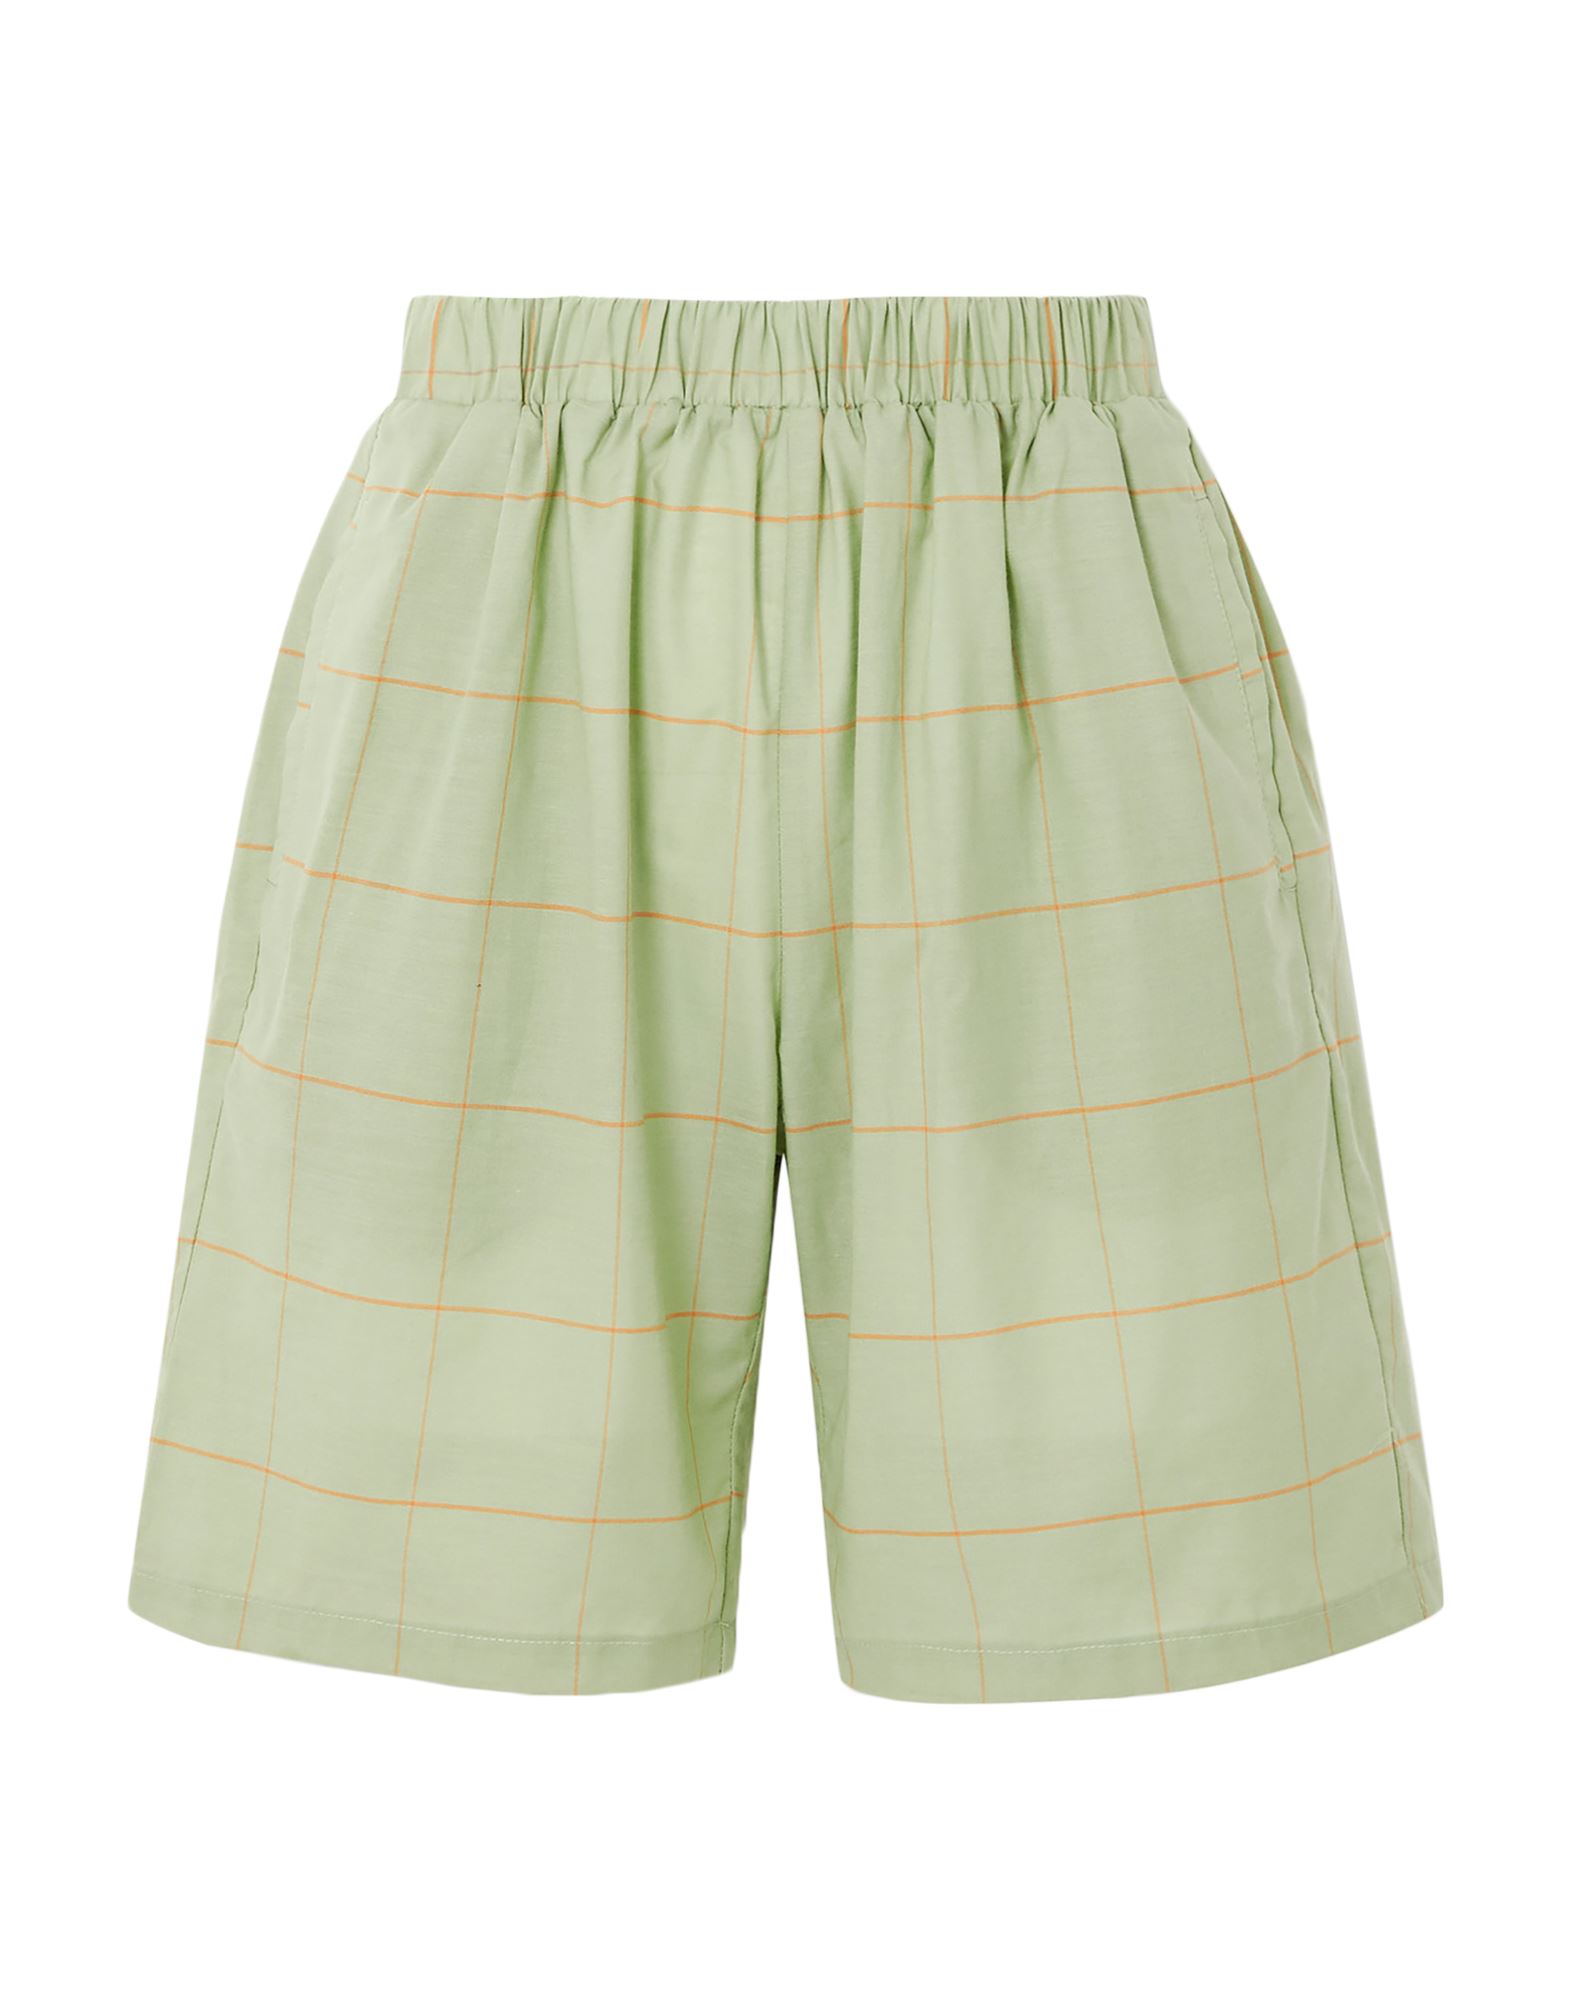 MATIN Shorts & Bermuda Shorts